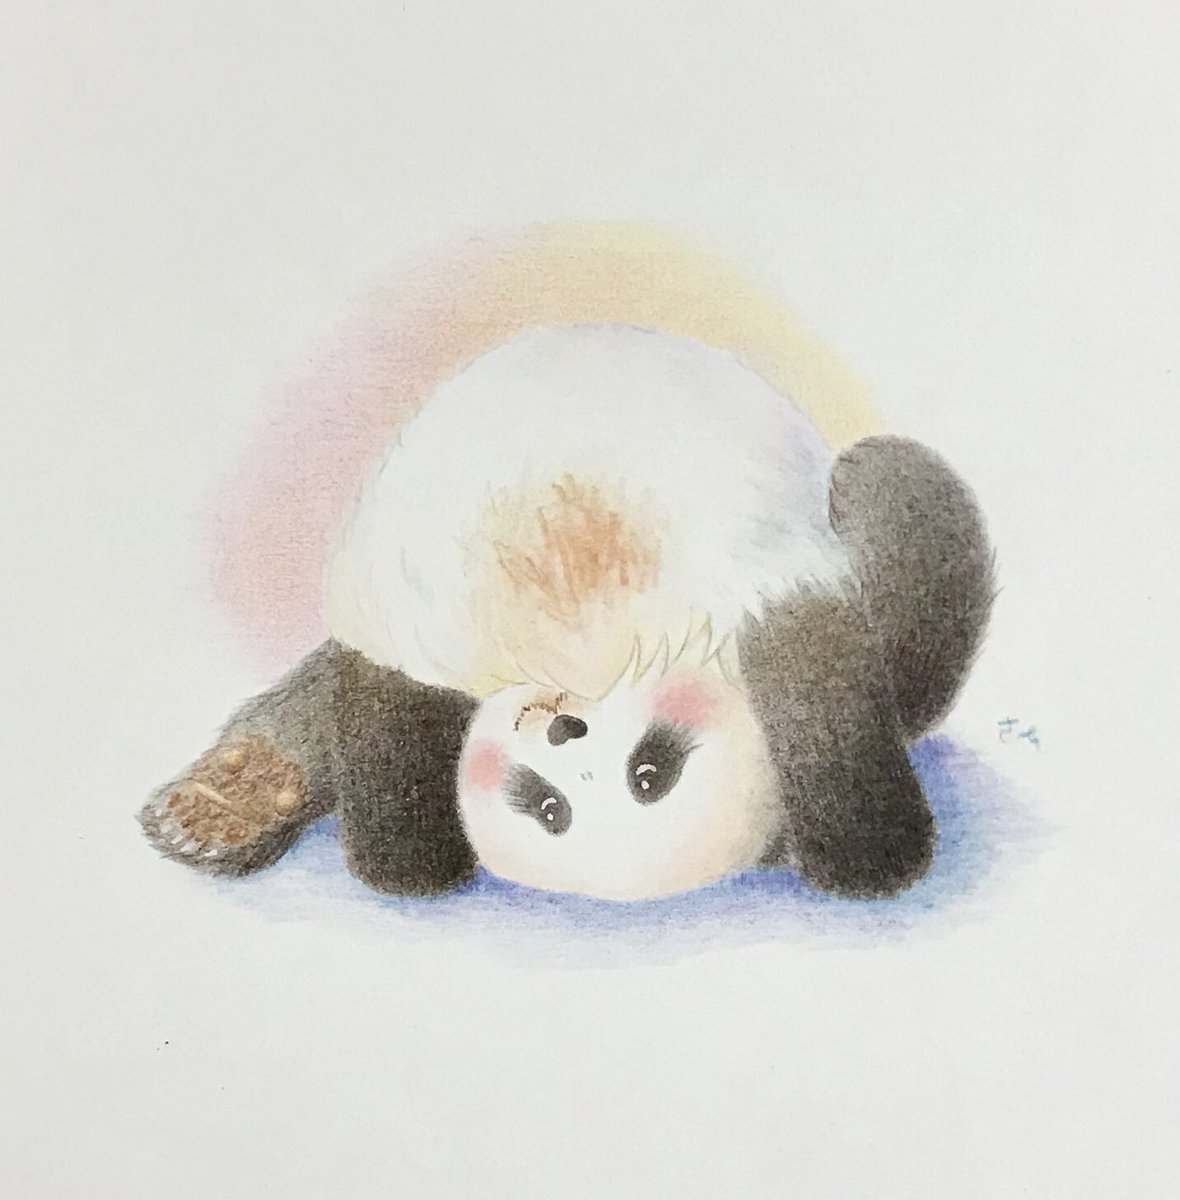 咲 パンダさん描きます ころころ子パンダ 可愛いおちり まんまるふわふわの綿アメごっこ モデルは結ちゃん パンダ 結浜 動物イラスト 色鉛筆画